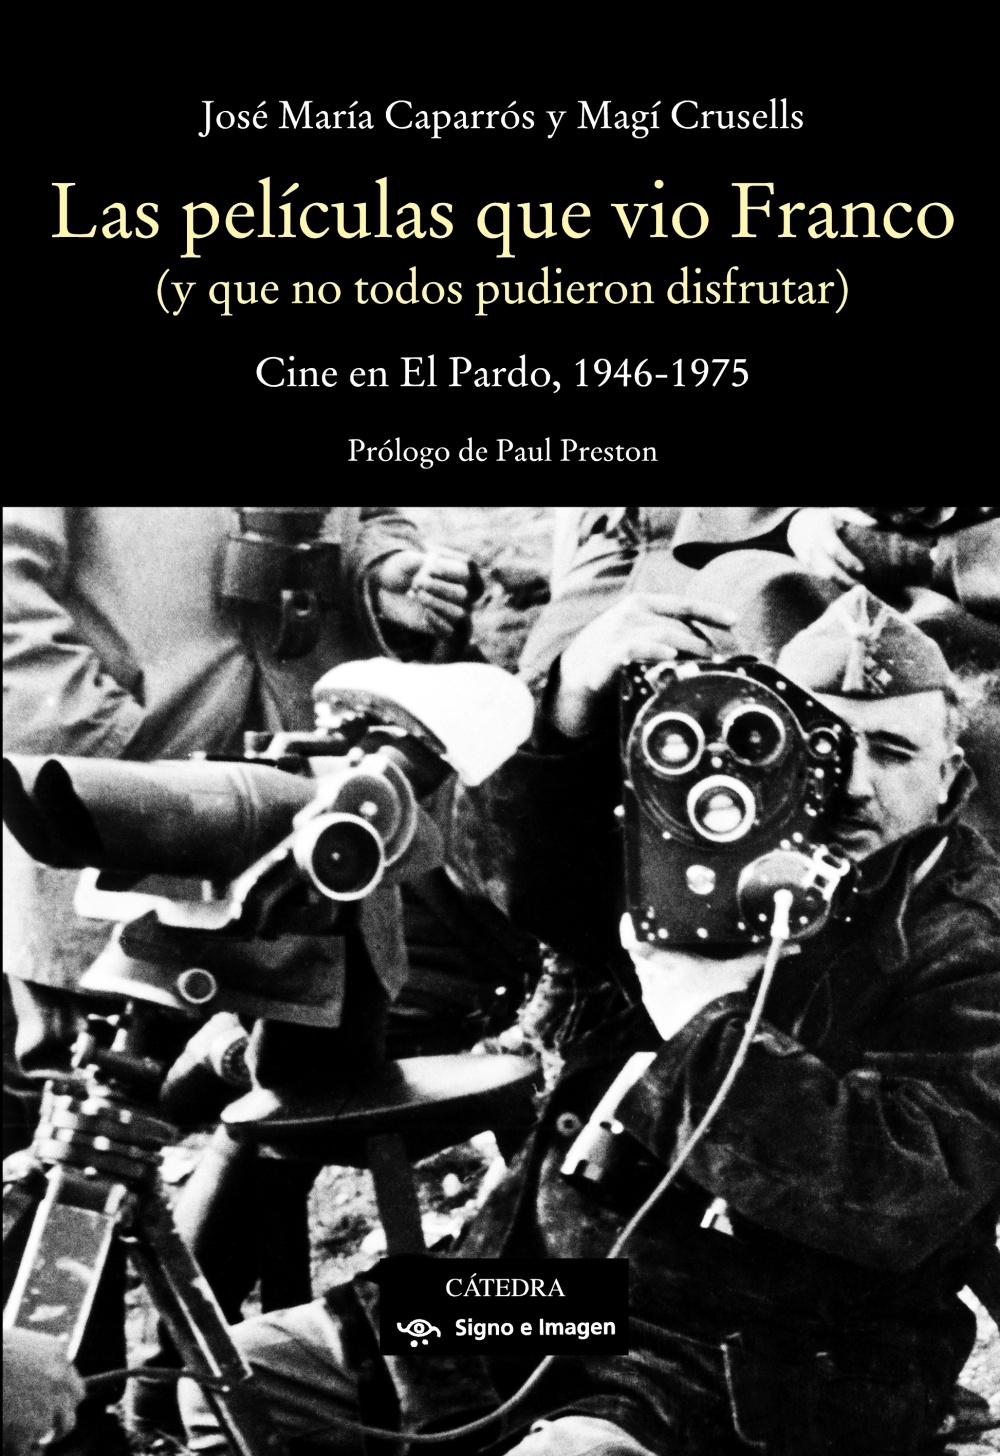 Las Películas que Vio Franco "Cine en el Pardo, 1946-1975". 